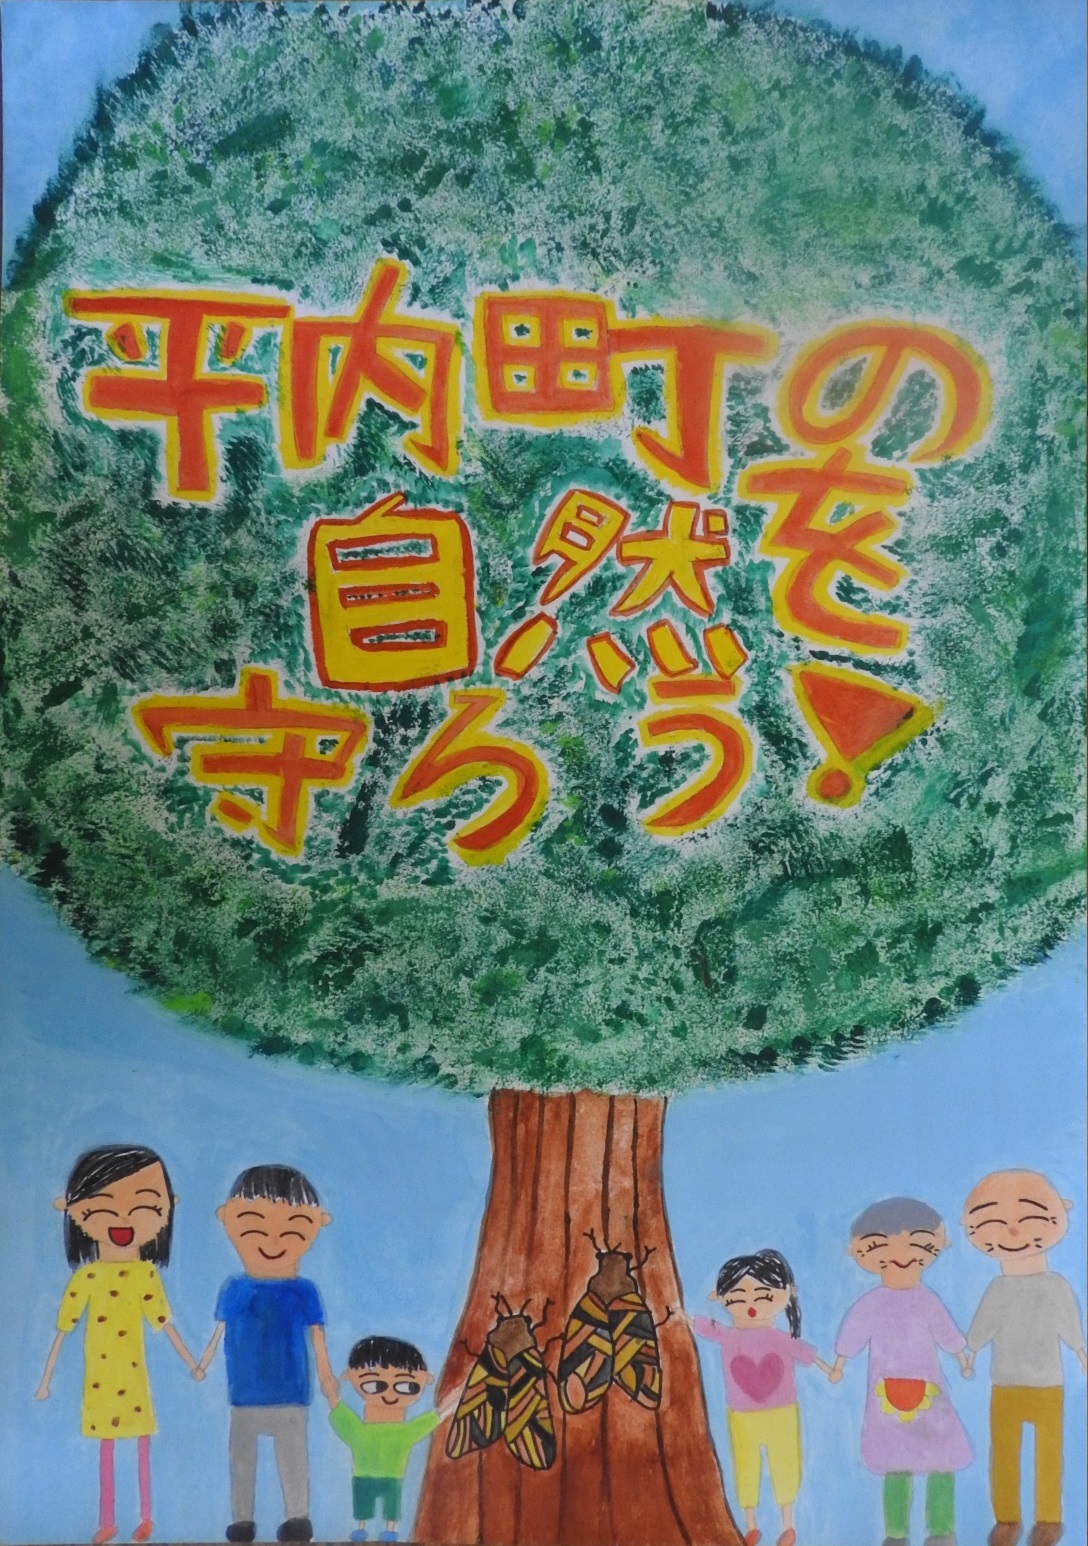 大きな木に停まる2匹のセミと一列に手をつなぐ、様々な年代の人たちの絵に「平内町の自然を守ろう！」と書かれたポスター